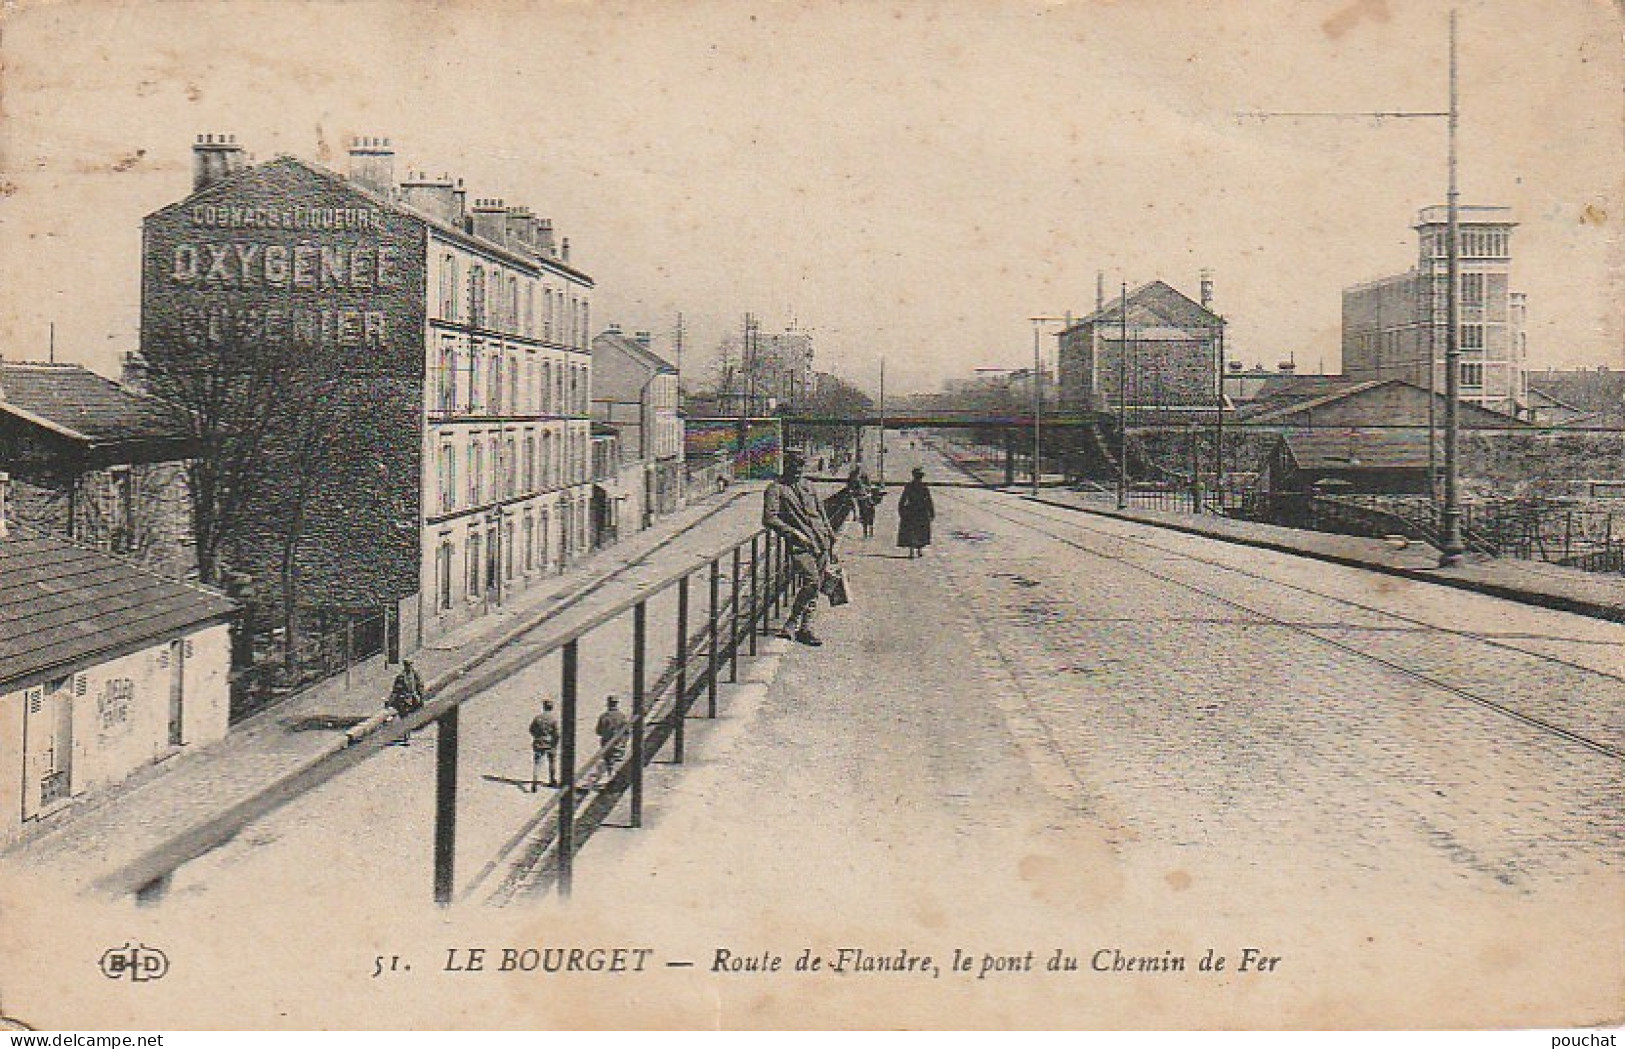 MO 7- (93) LE BOURGET - ROUTE DE FLANDRE , LE PONT DE CHEMIN DE FER  - PUBLICITE OXYGENEE CUSENIER  - 2 SCANS - Le Bourget